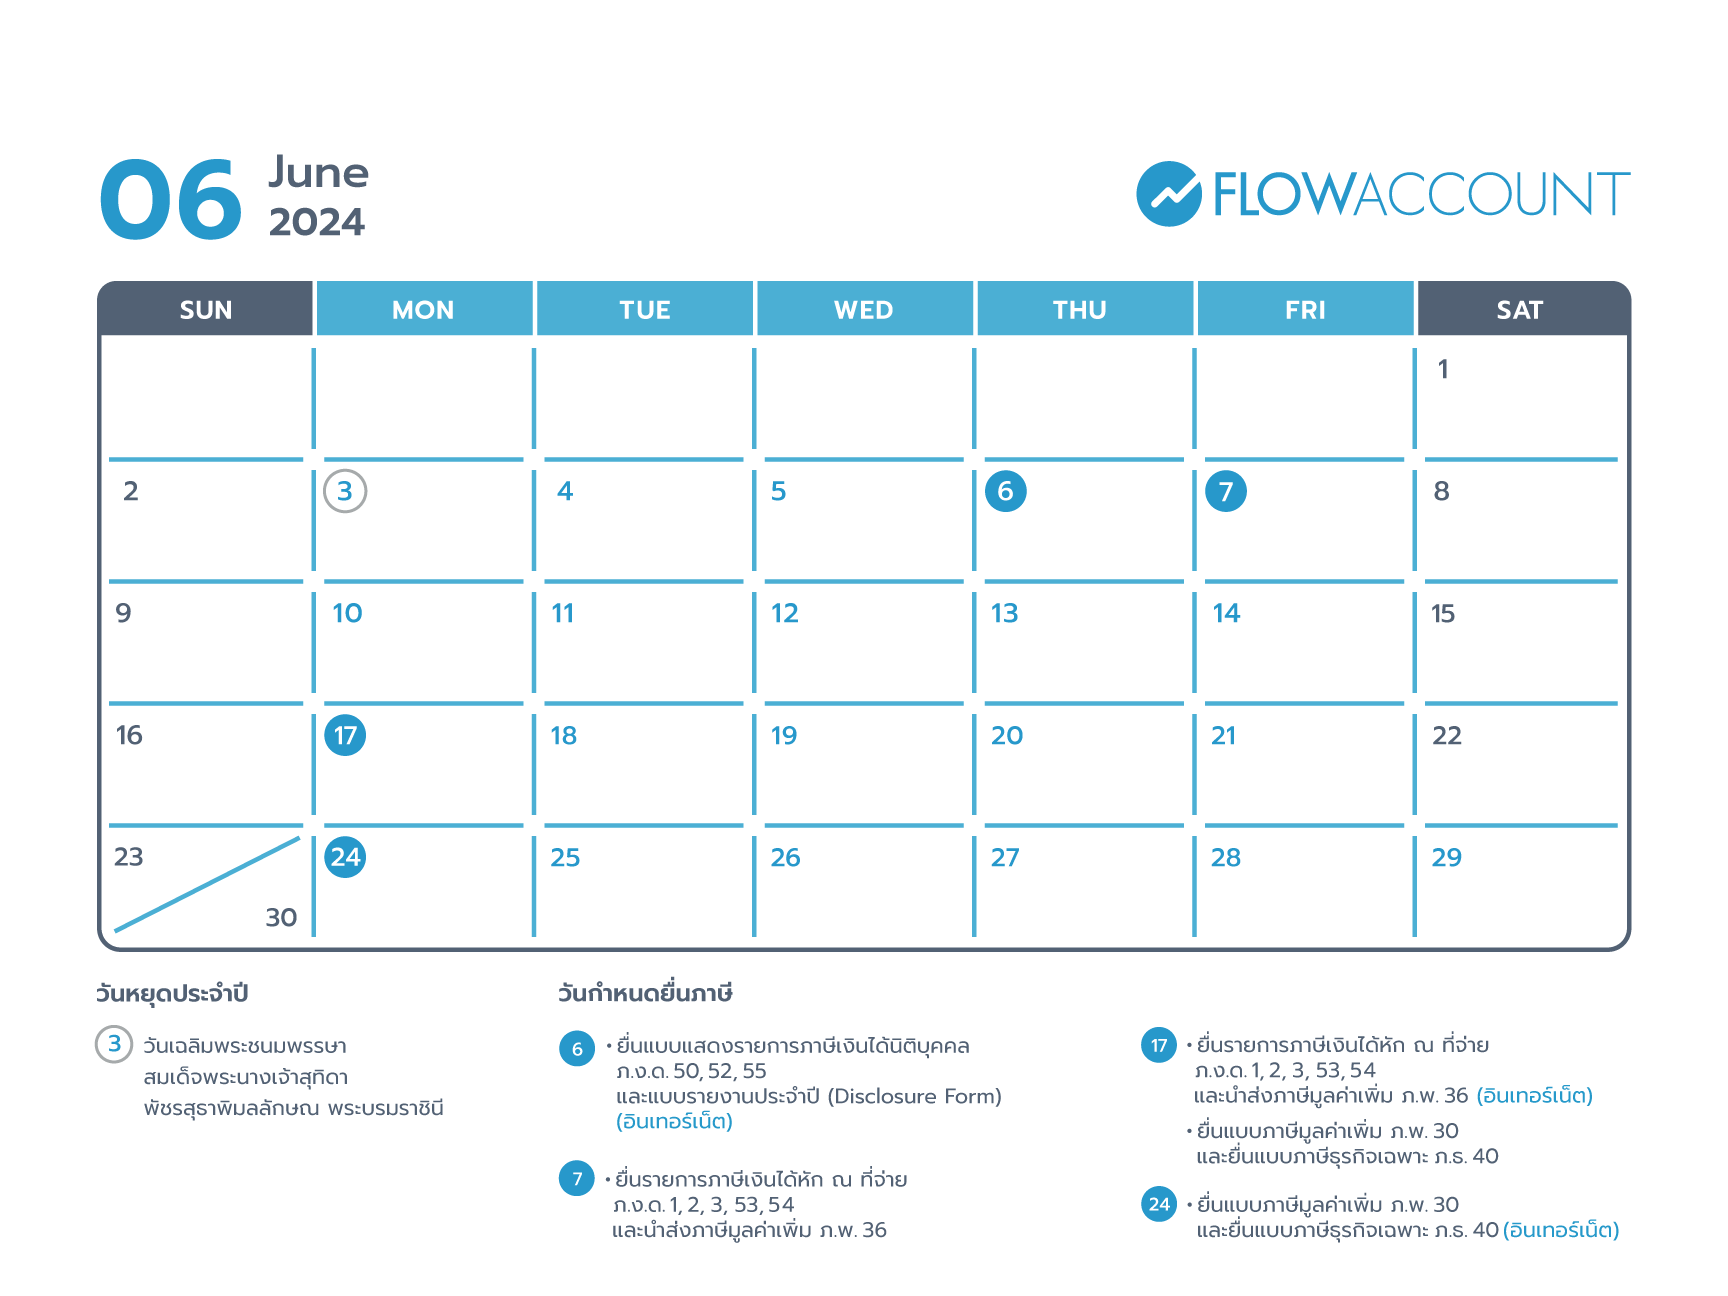 Tax calendar on June 2024